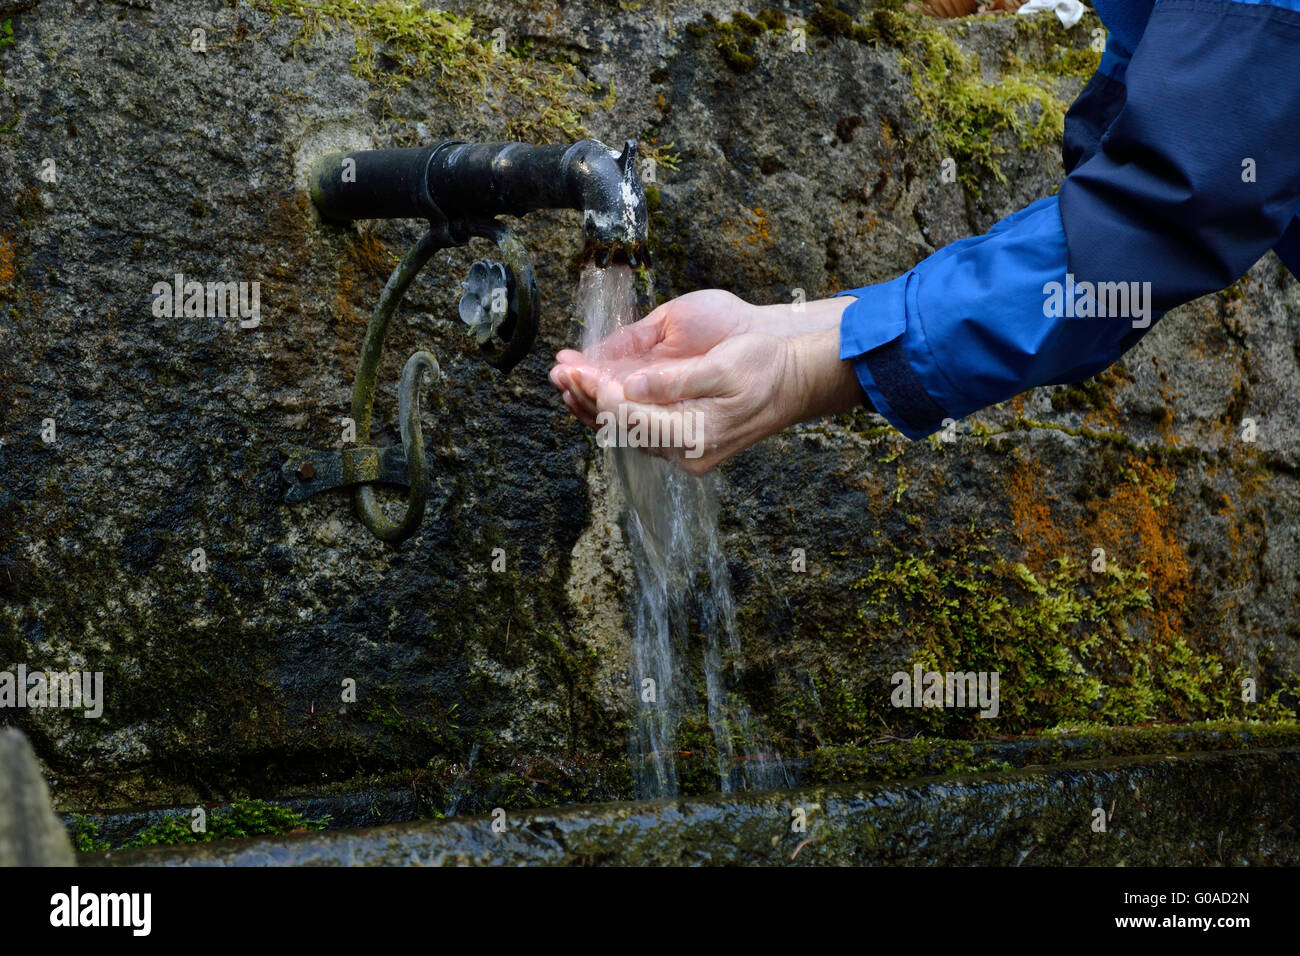 Personne actualise lui-même à une source d'eau potable Banque D'Images